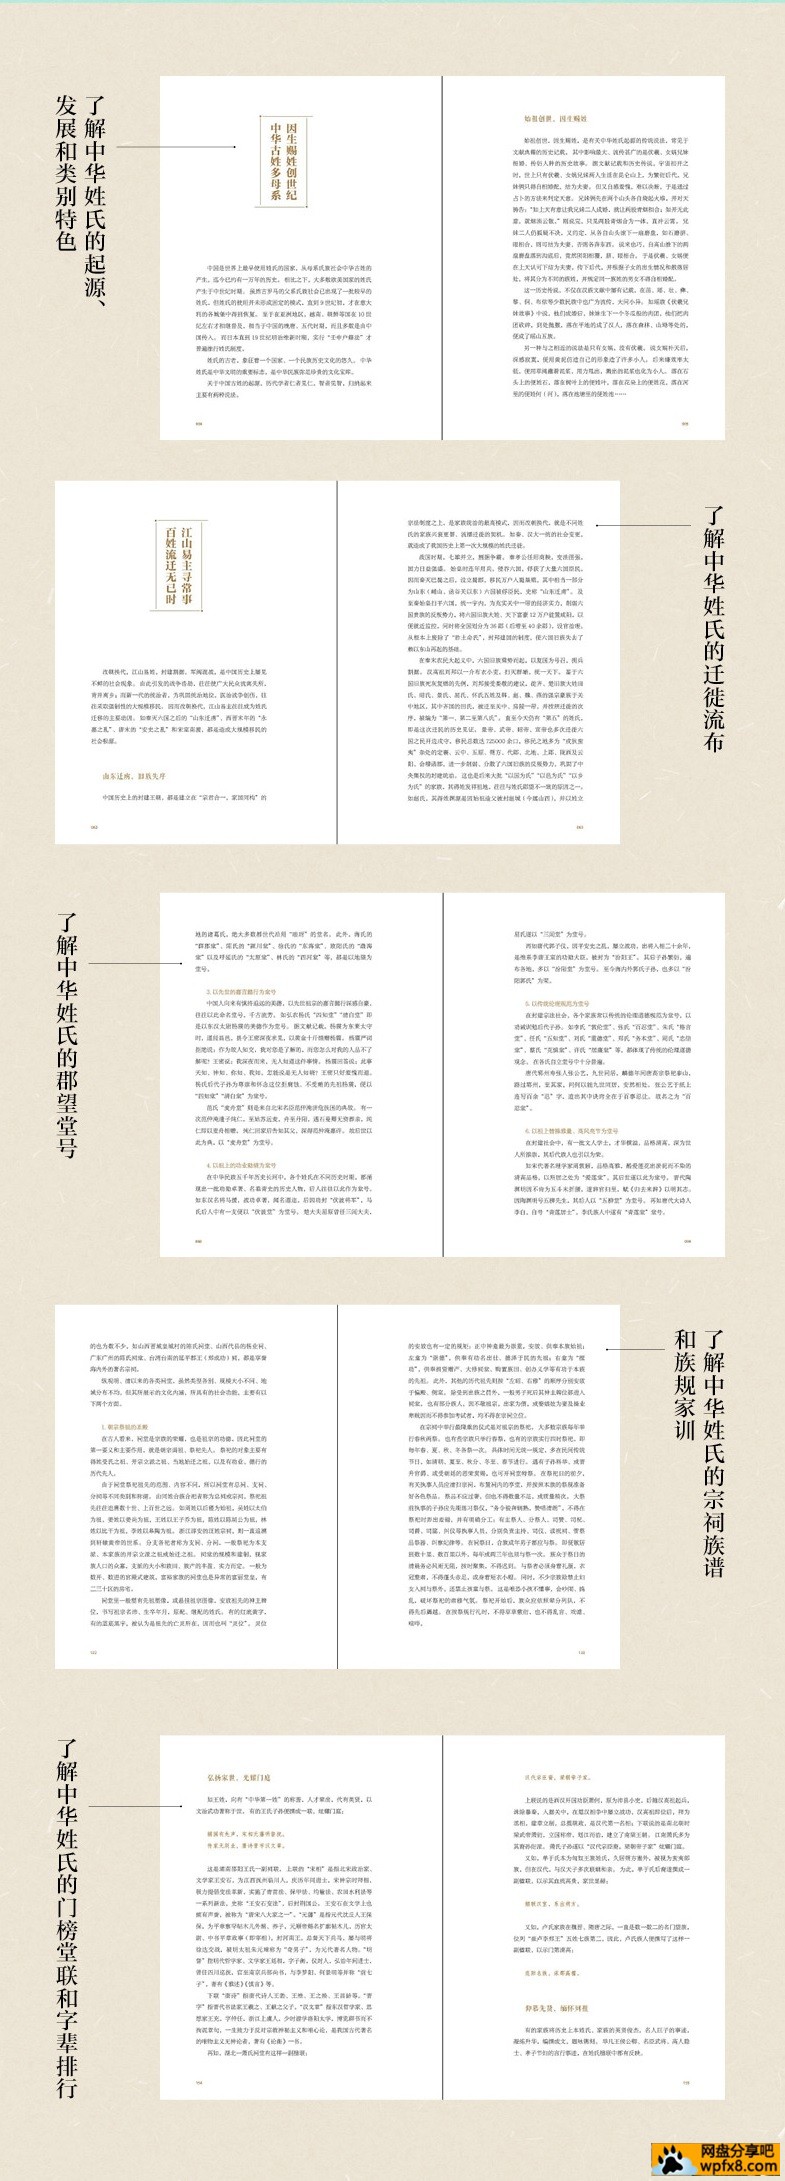 中国人的姓氏文化 2.jpg